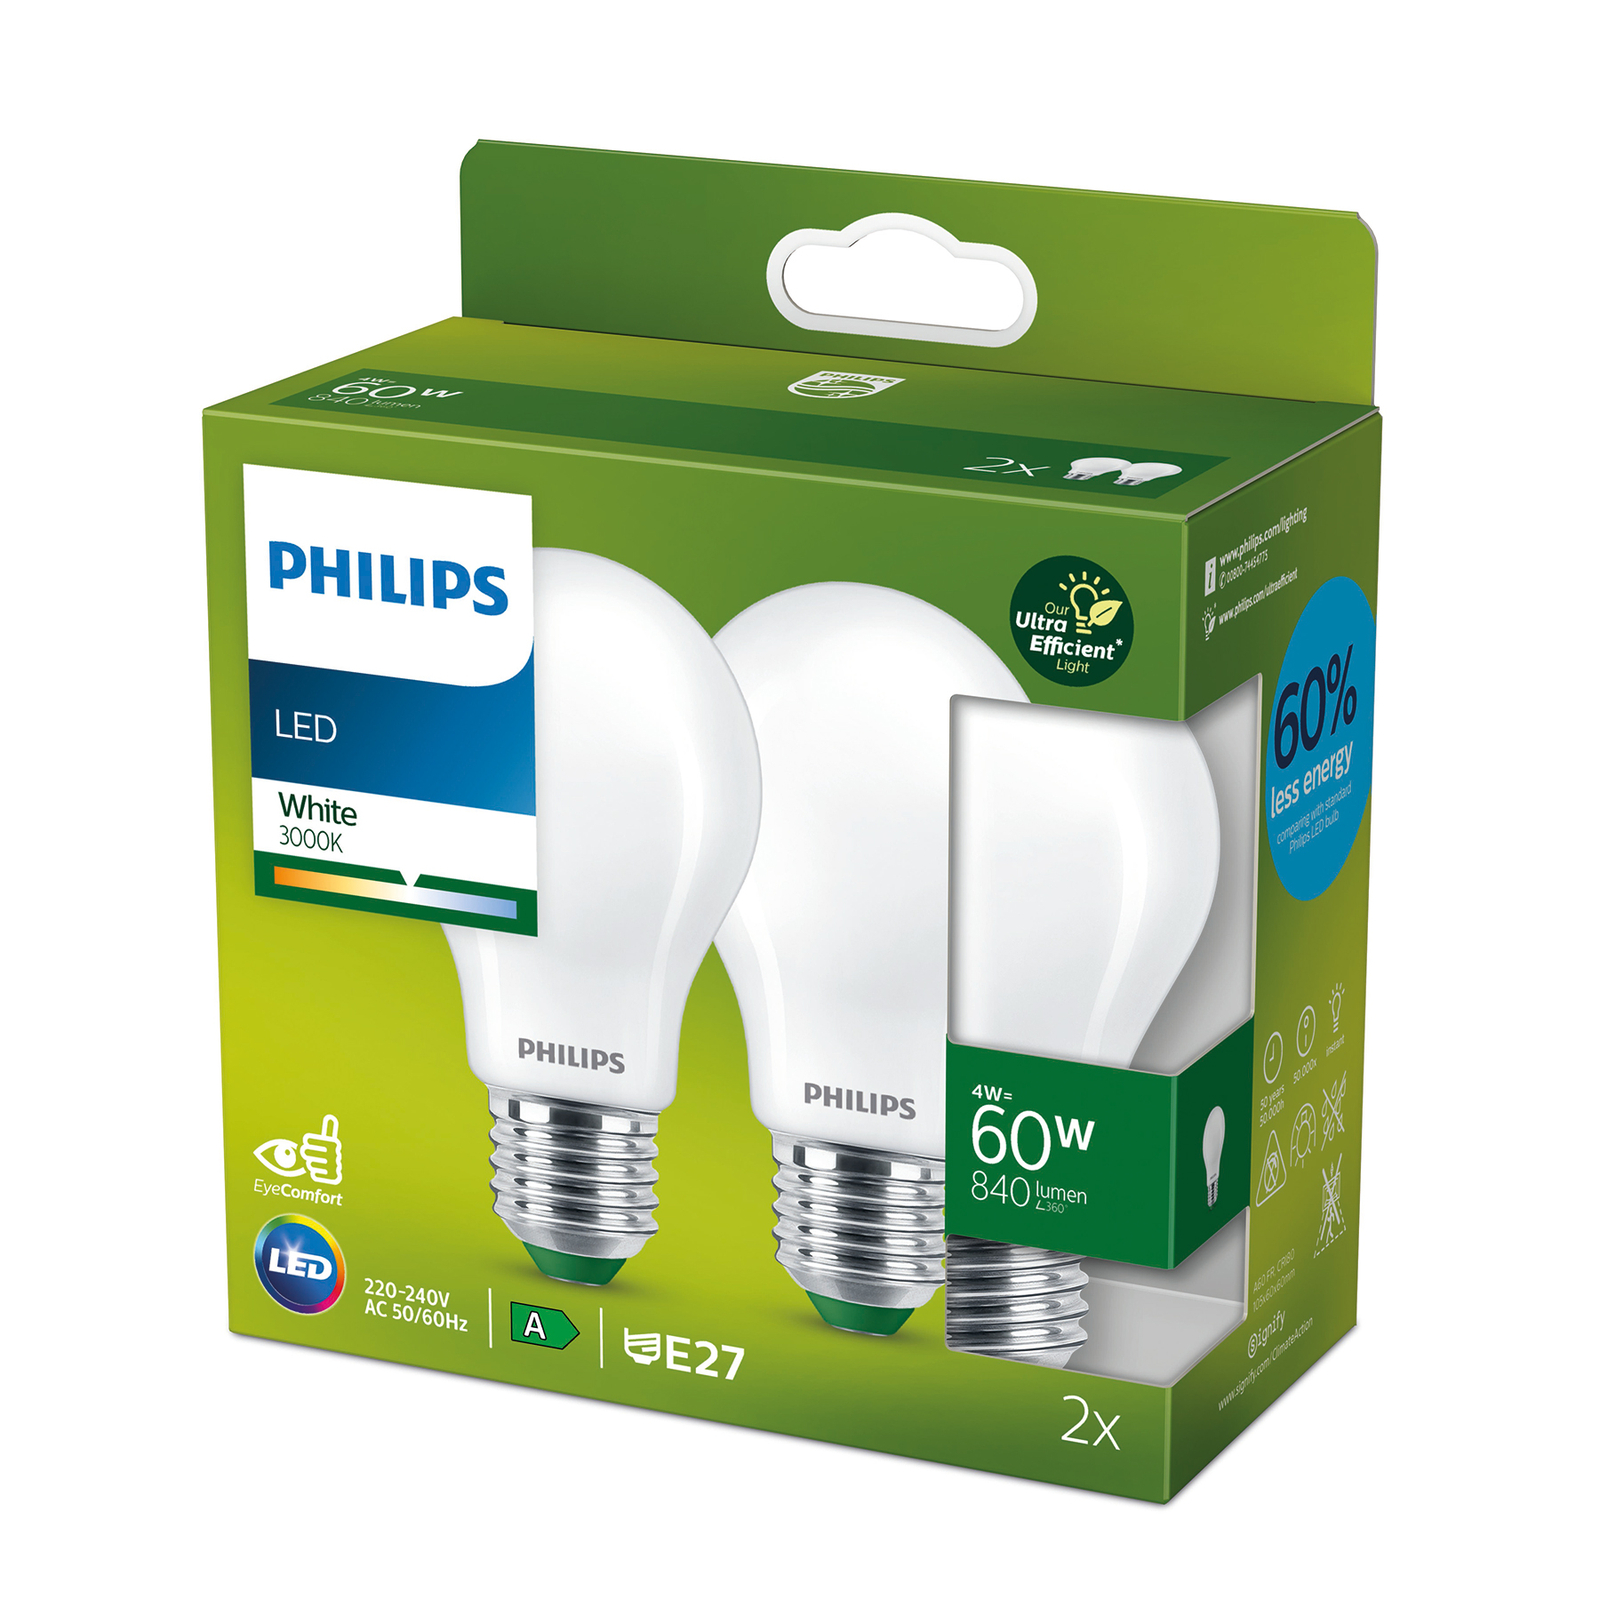 Lief fonds Megalopolis Philips LED lamp E27 A60 4W 840lm mat 3.000K per 2 | Lampen24.be